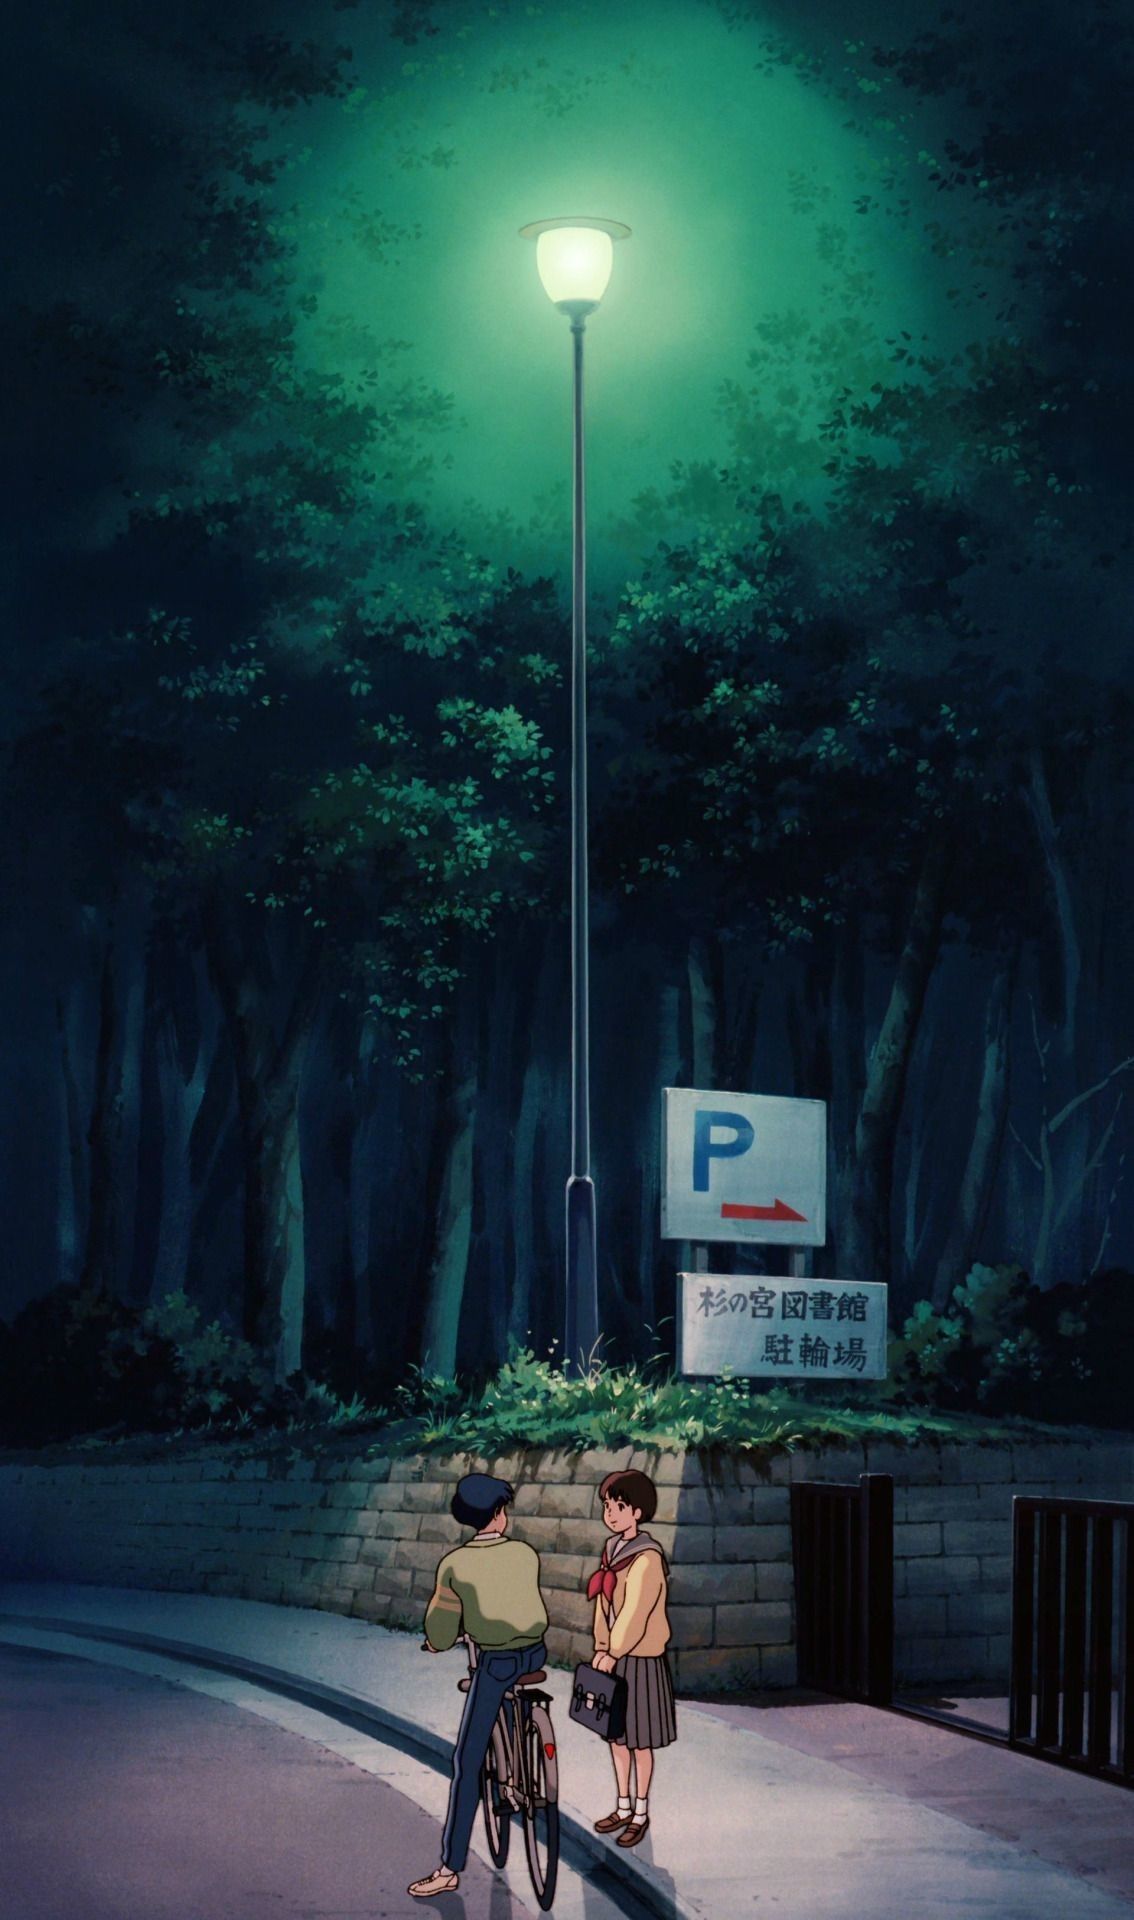 Aesthetic Studio Ghibli Wallpaper Free HD Wallpaper